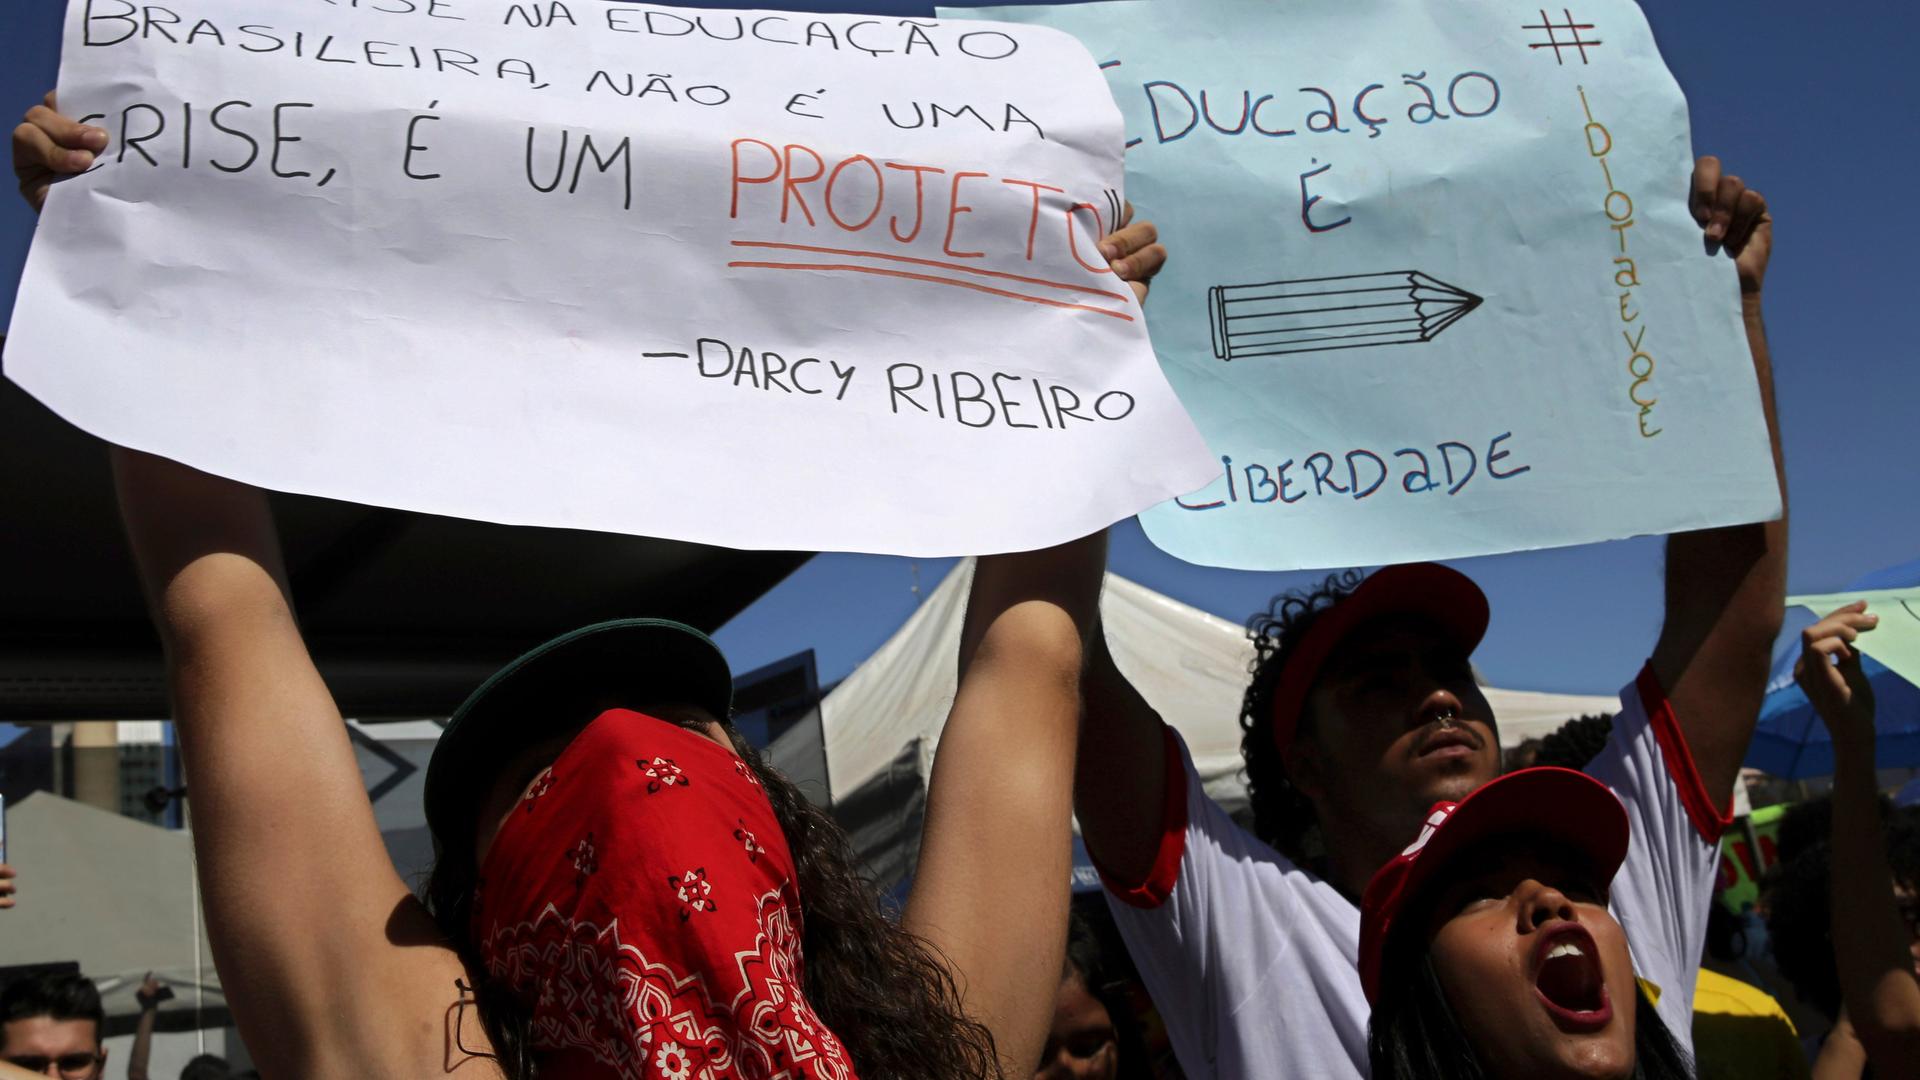 "Die Bildungskrise in Brasilien ist keine Krise, sie ist ein Projekt.": Mit diesem Zitat von Darcy Ribeiro  protestieren Demonstrierende während des landesweiten Bildungsstreiks 2019 Brasilia.